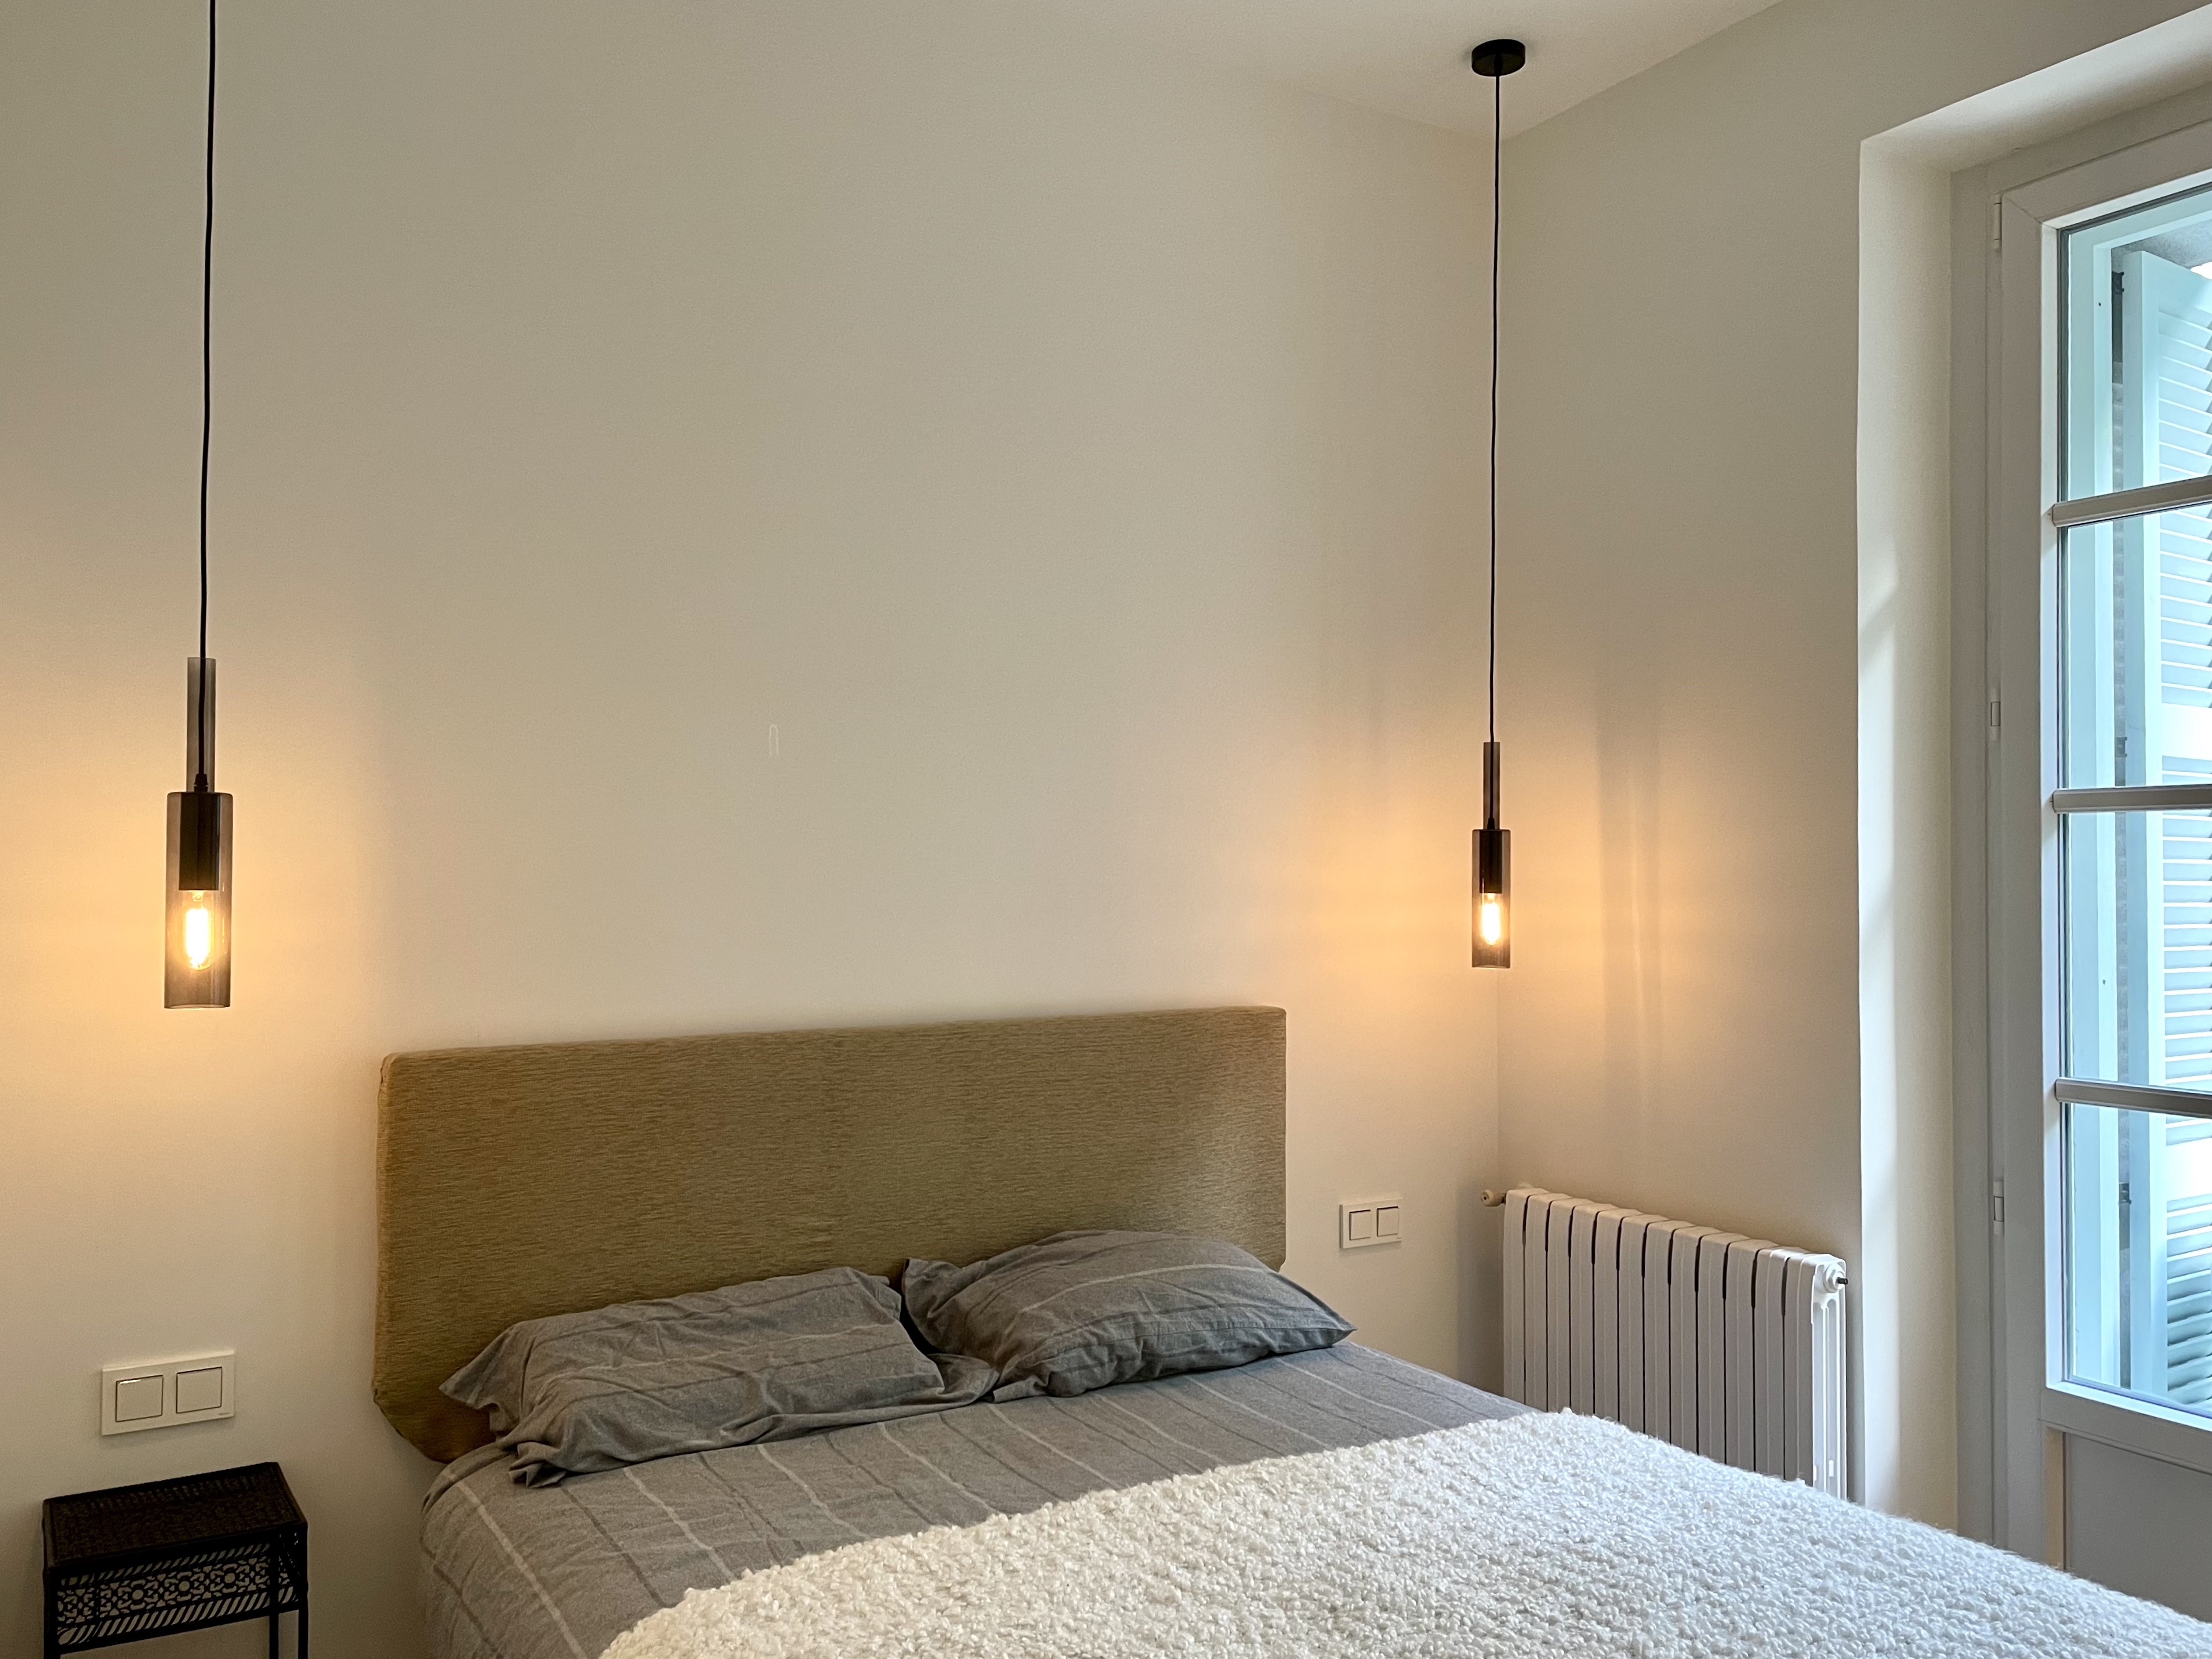 Decoración en dormitorio, lamparas de mesilla colgando del techo en Donostia - San Sebastian.